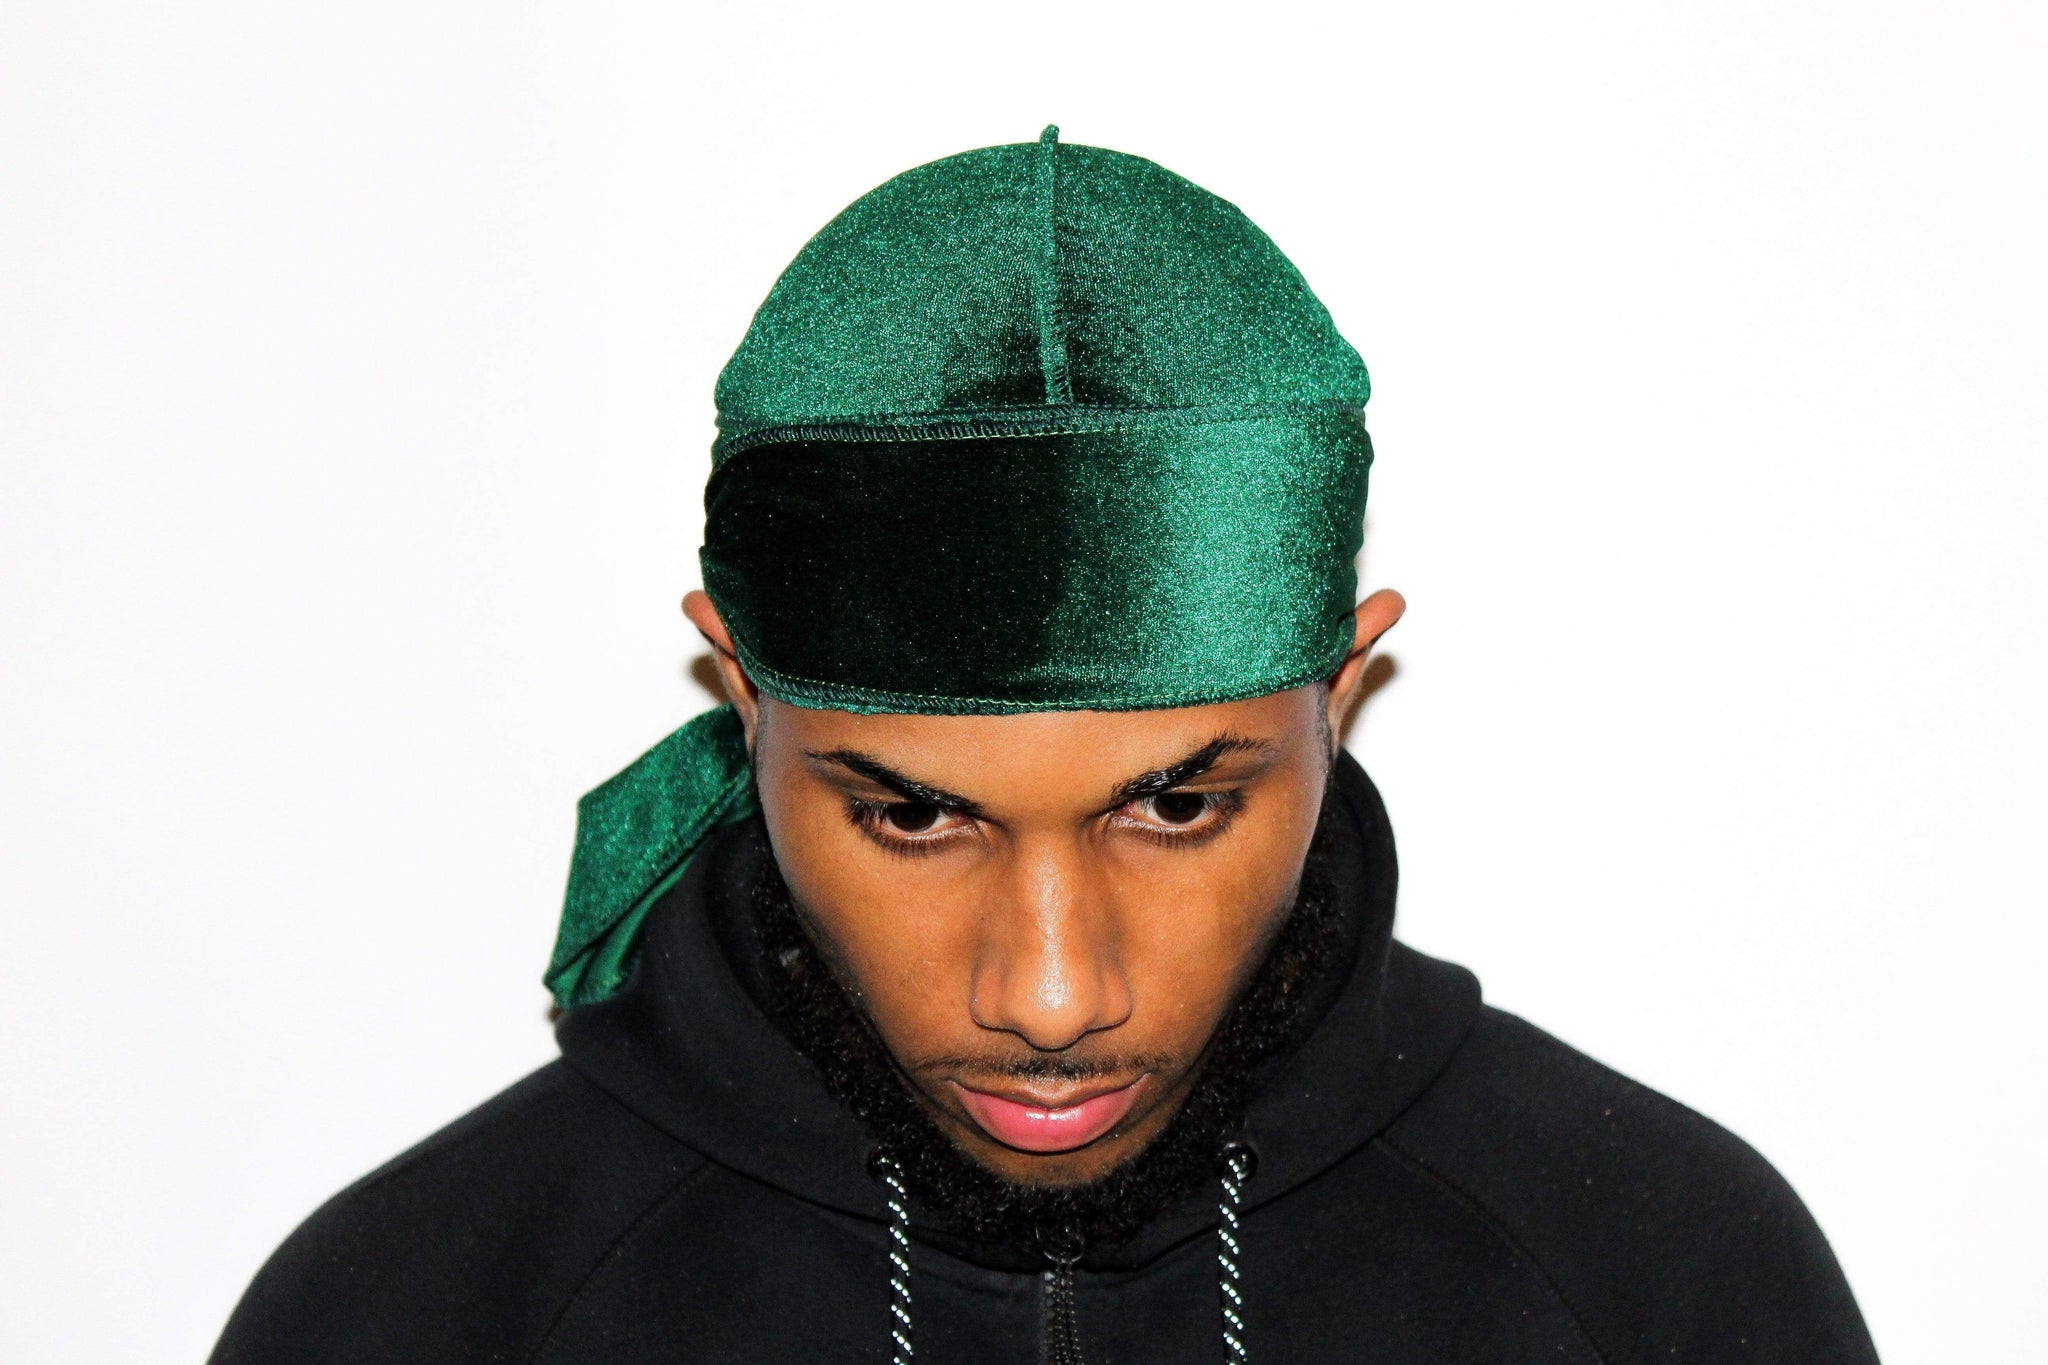 Designer Headbands and Bonnets Velvet Durags for Men Stretch